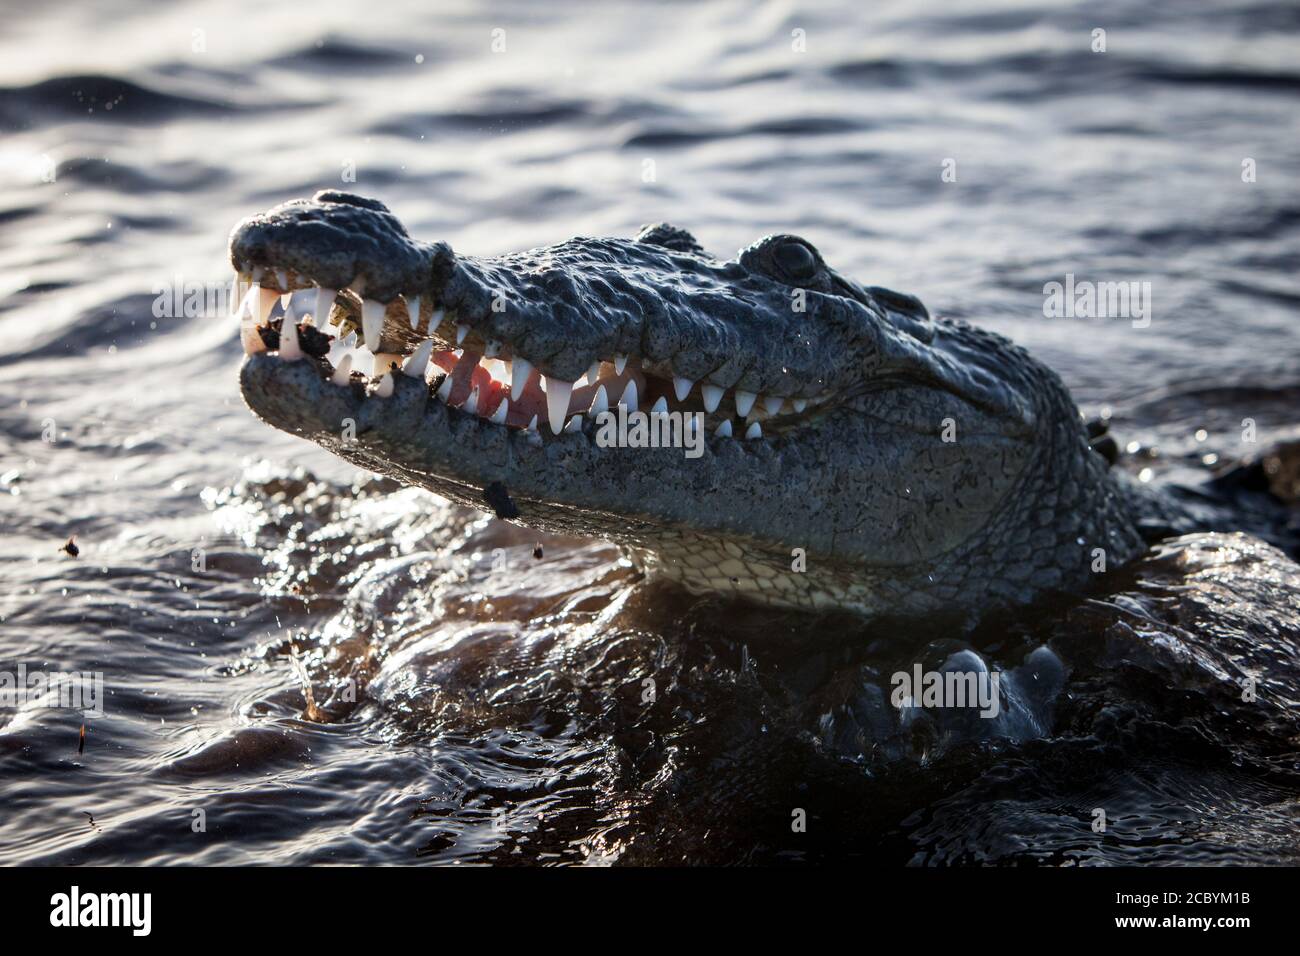 Un coccodrillo americano, il coccodrillo acutus, si aggana sul bordo dell'acqua nel Mar dei Caraibi in Belize. Questi sono predatori pericolosi e sneaky. Foto Stock